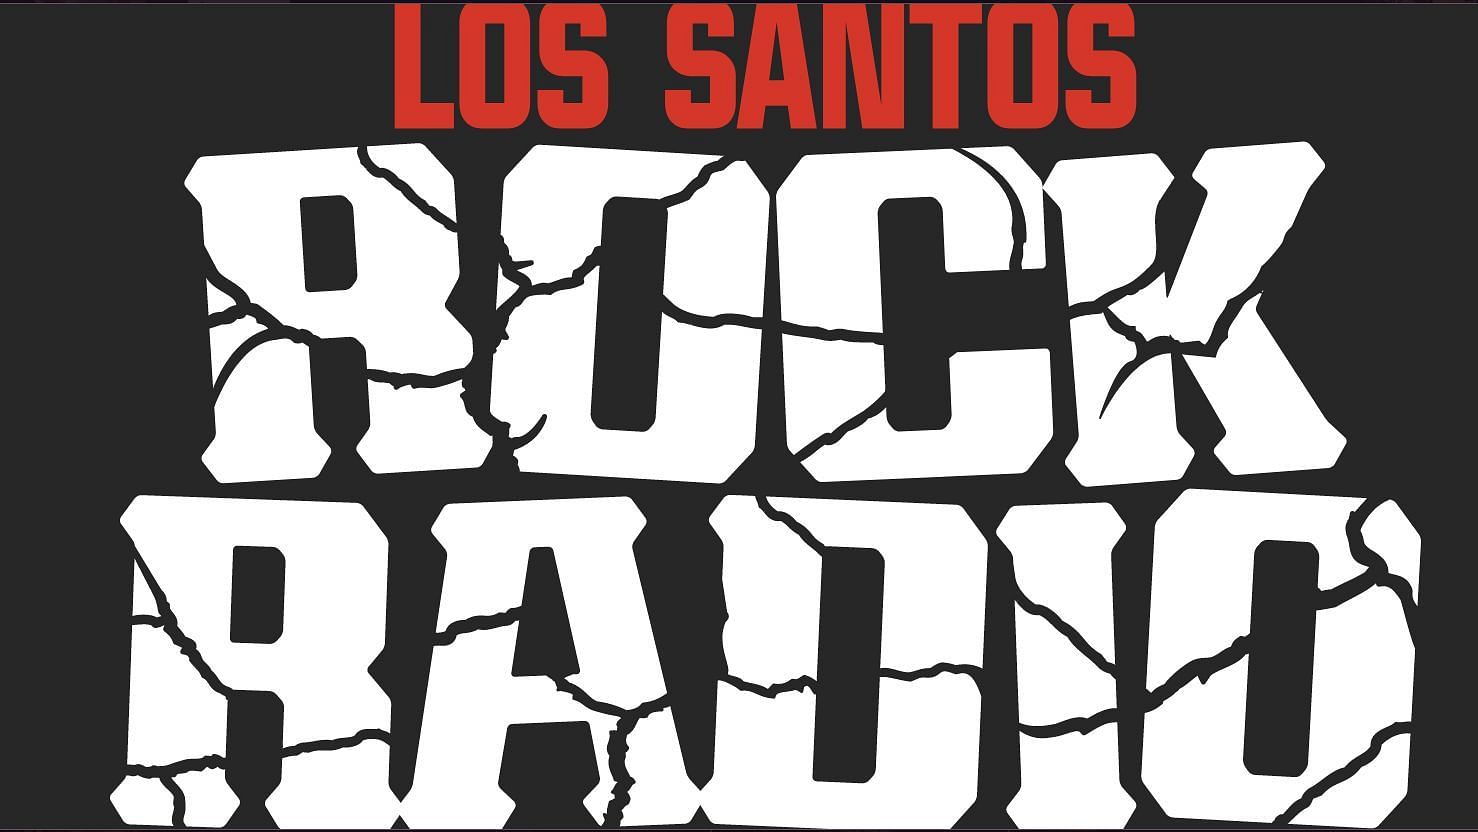 Radio los santos из гта 5 фото 74